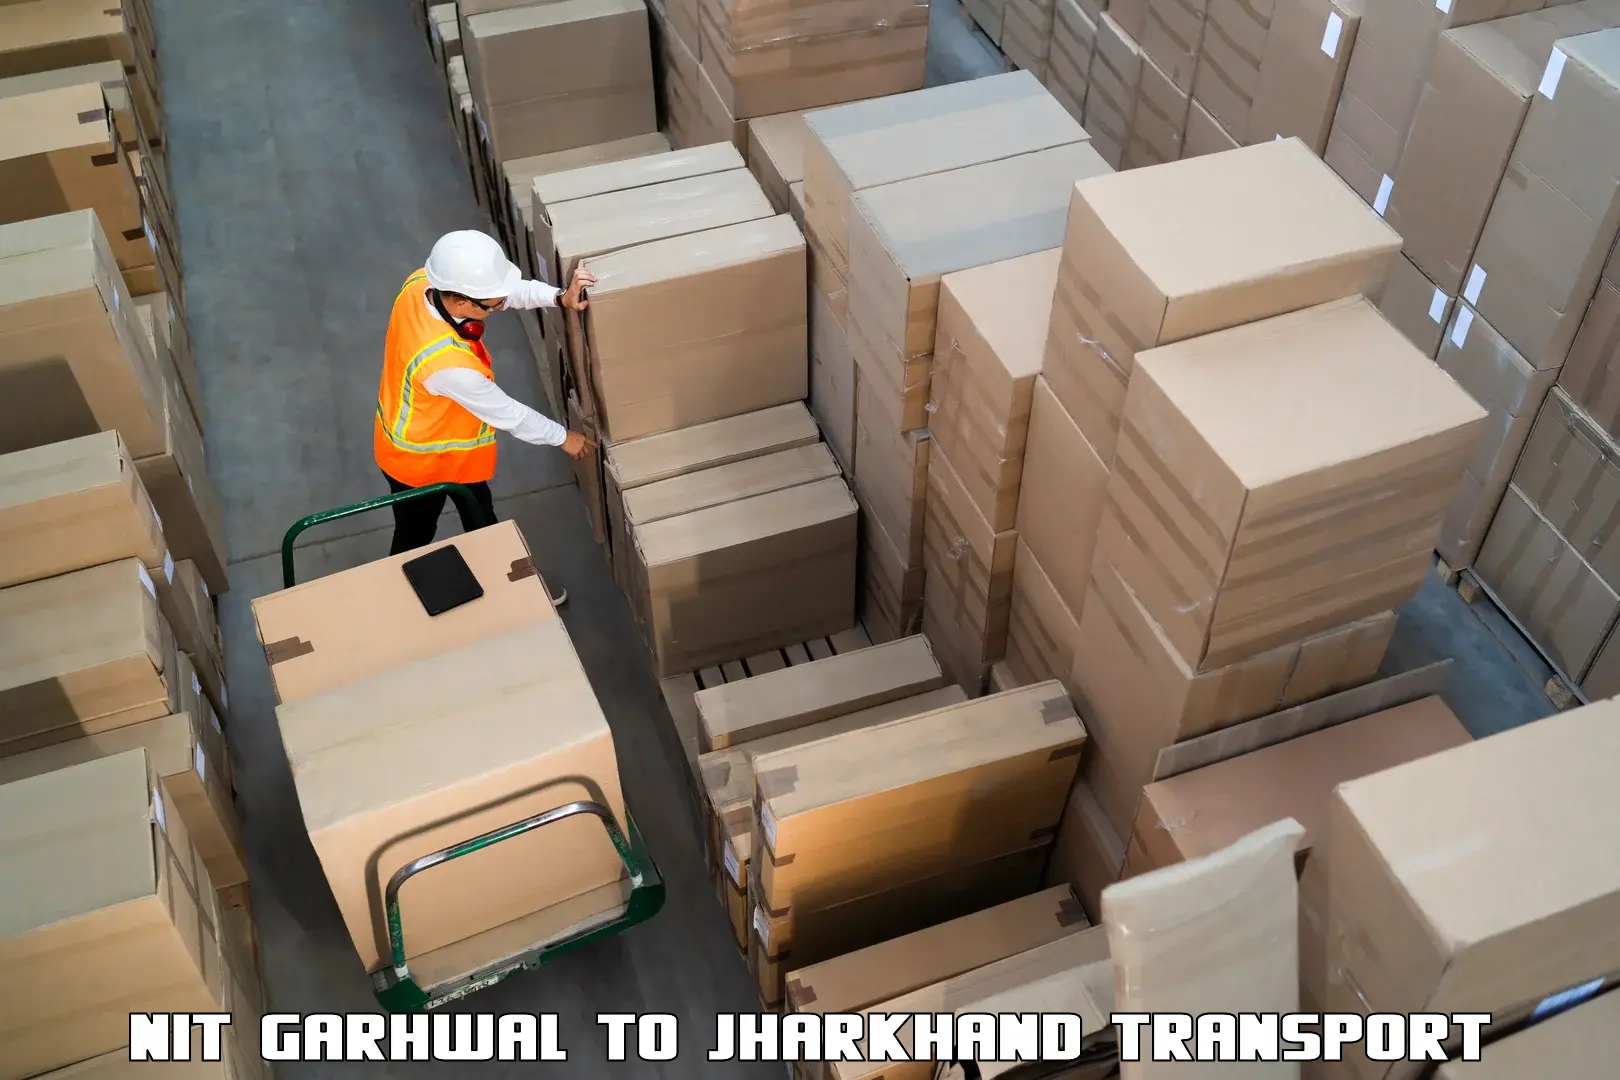 Furniture transport service NIT Garhwal to Adityapur